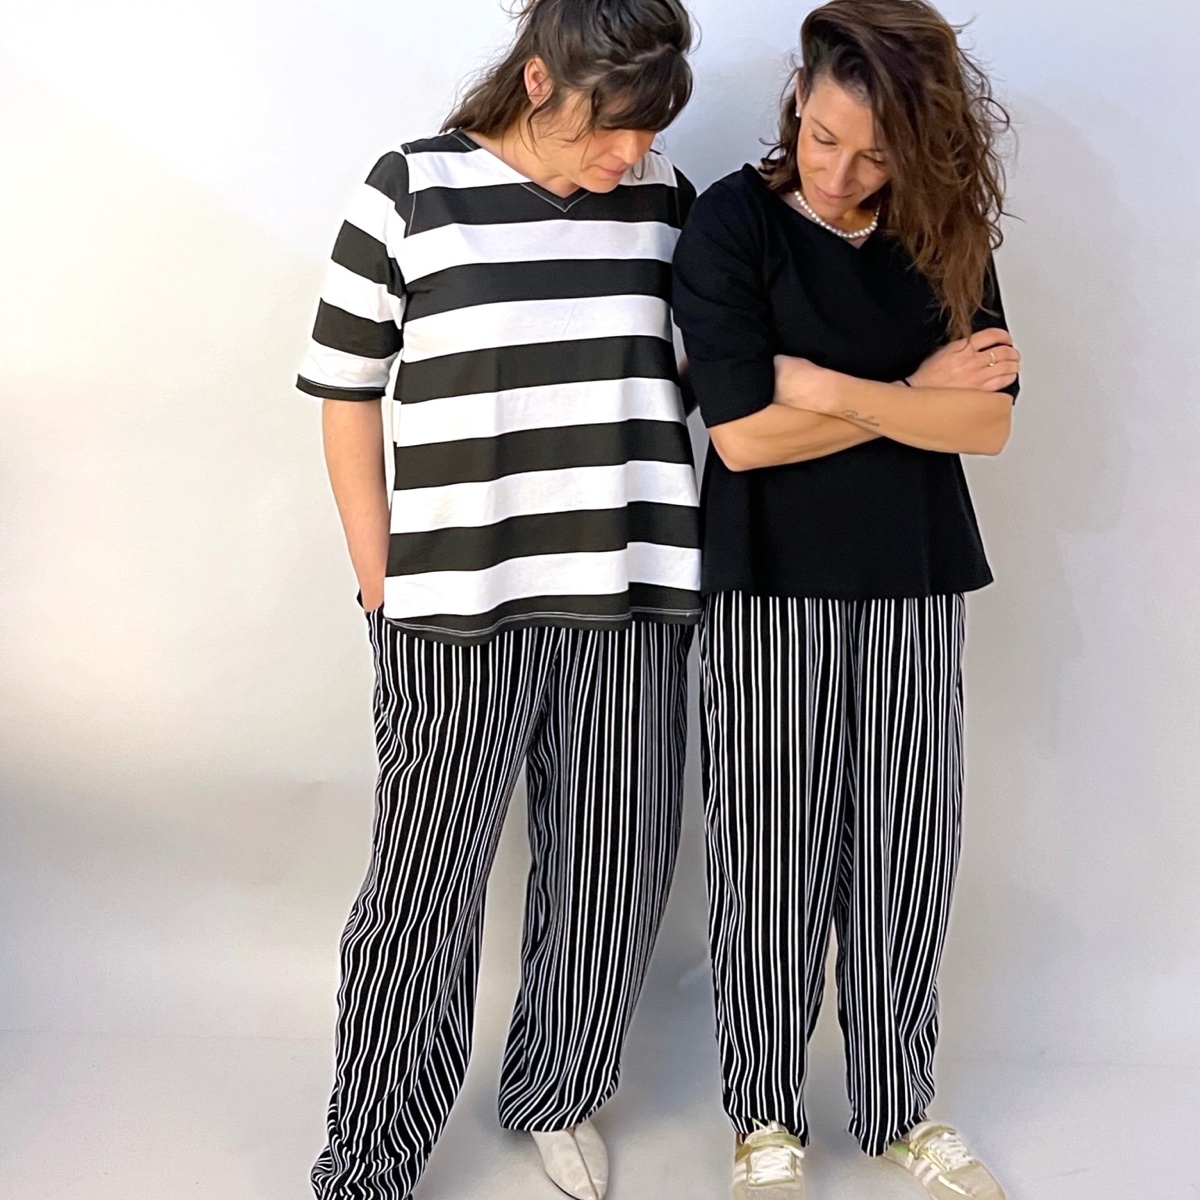 מכנסיים מדגם נור עם דוגמה של פסים לאורך בשחור ולבן - זוג אחרון במלאי במידה 18